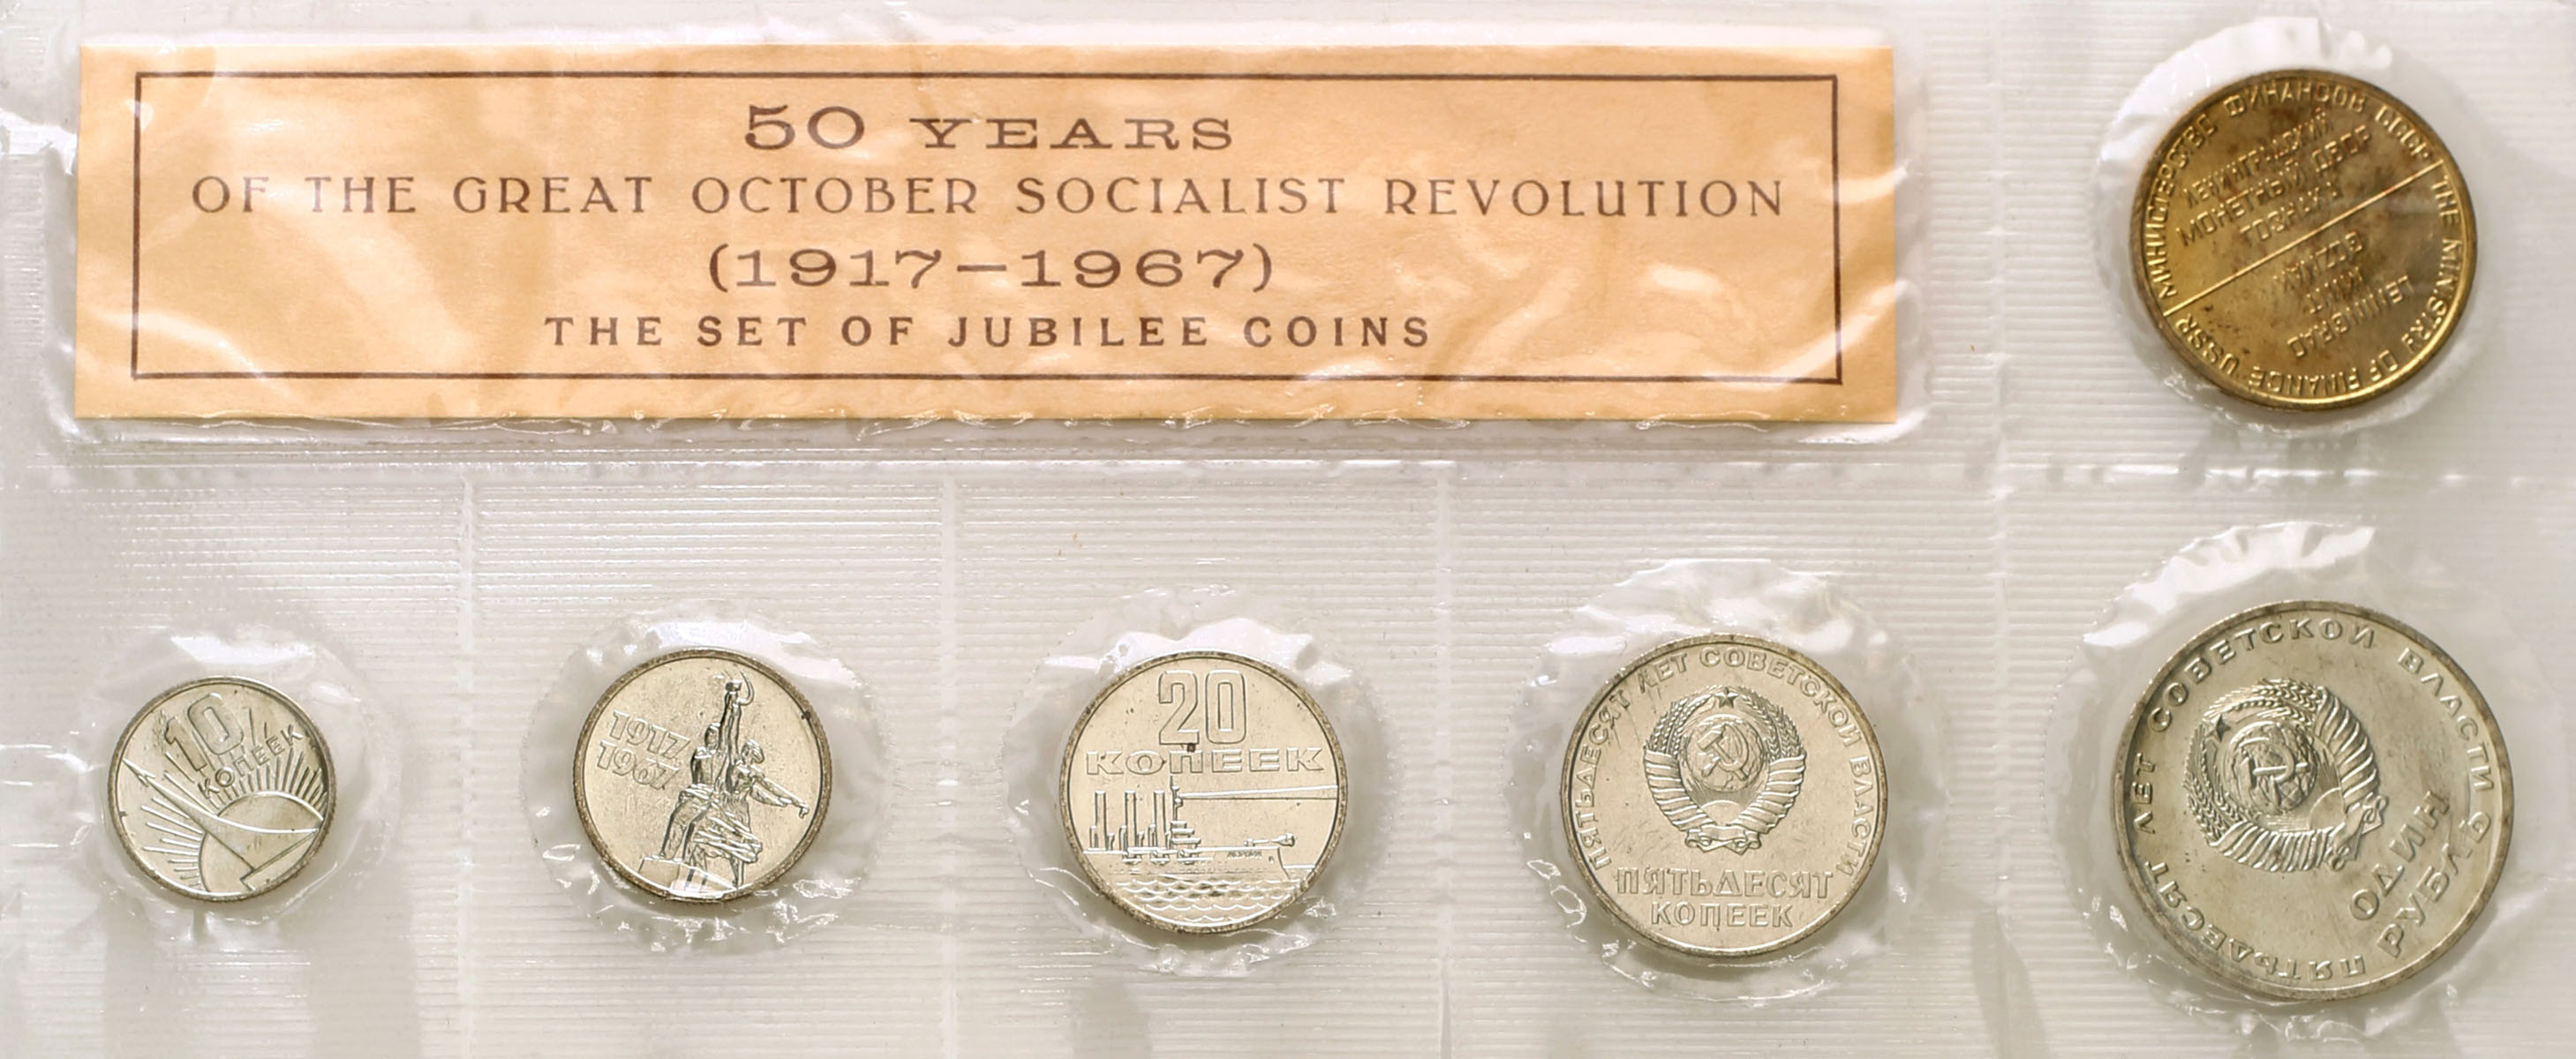 ZSRR. Zestaw rocznikowy 6 monet z 1967 roku - 50 lat Wielkiej Rewolucji Październikowej